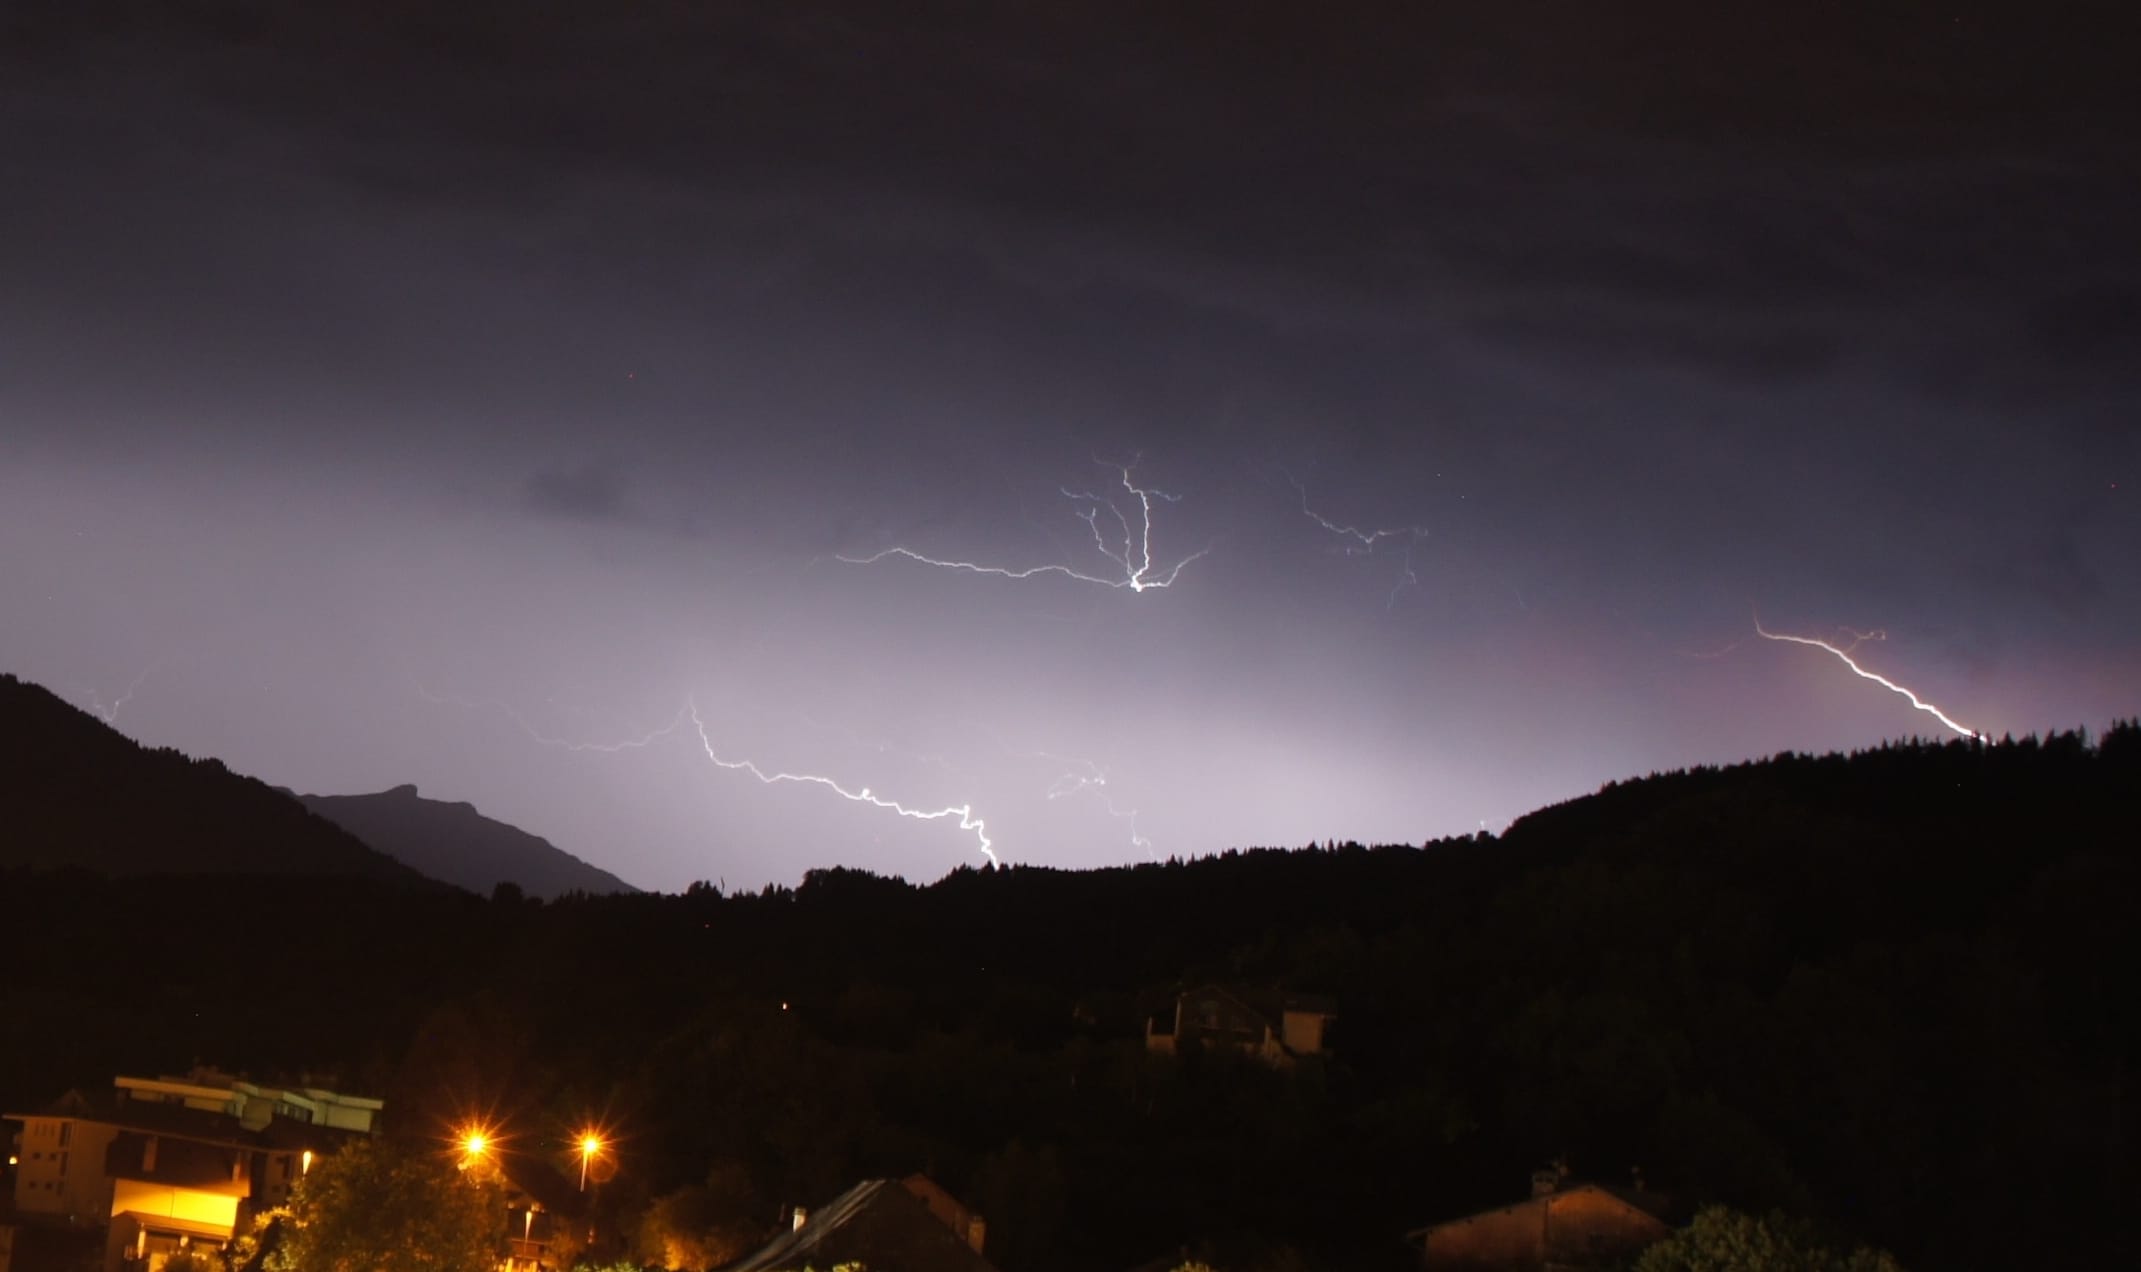 Petite image prise de l'orage d'hier soir vers 22h30, orage qui c'est bien réactivé sur le massif du Mont Blanc - 13/06/2017 22:30 - Yassine Arbaji